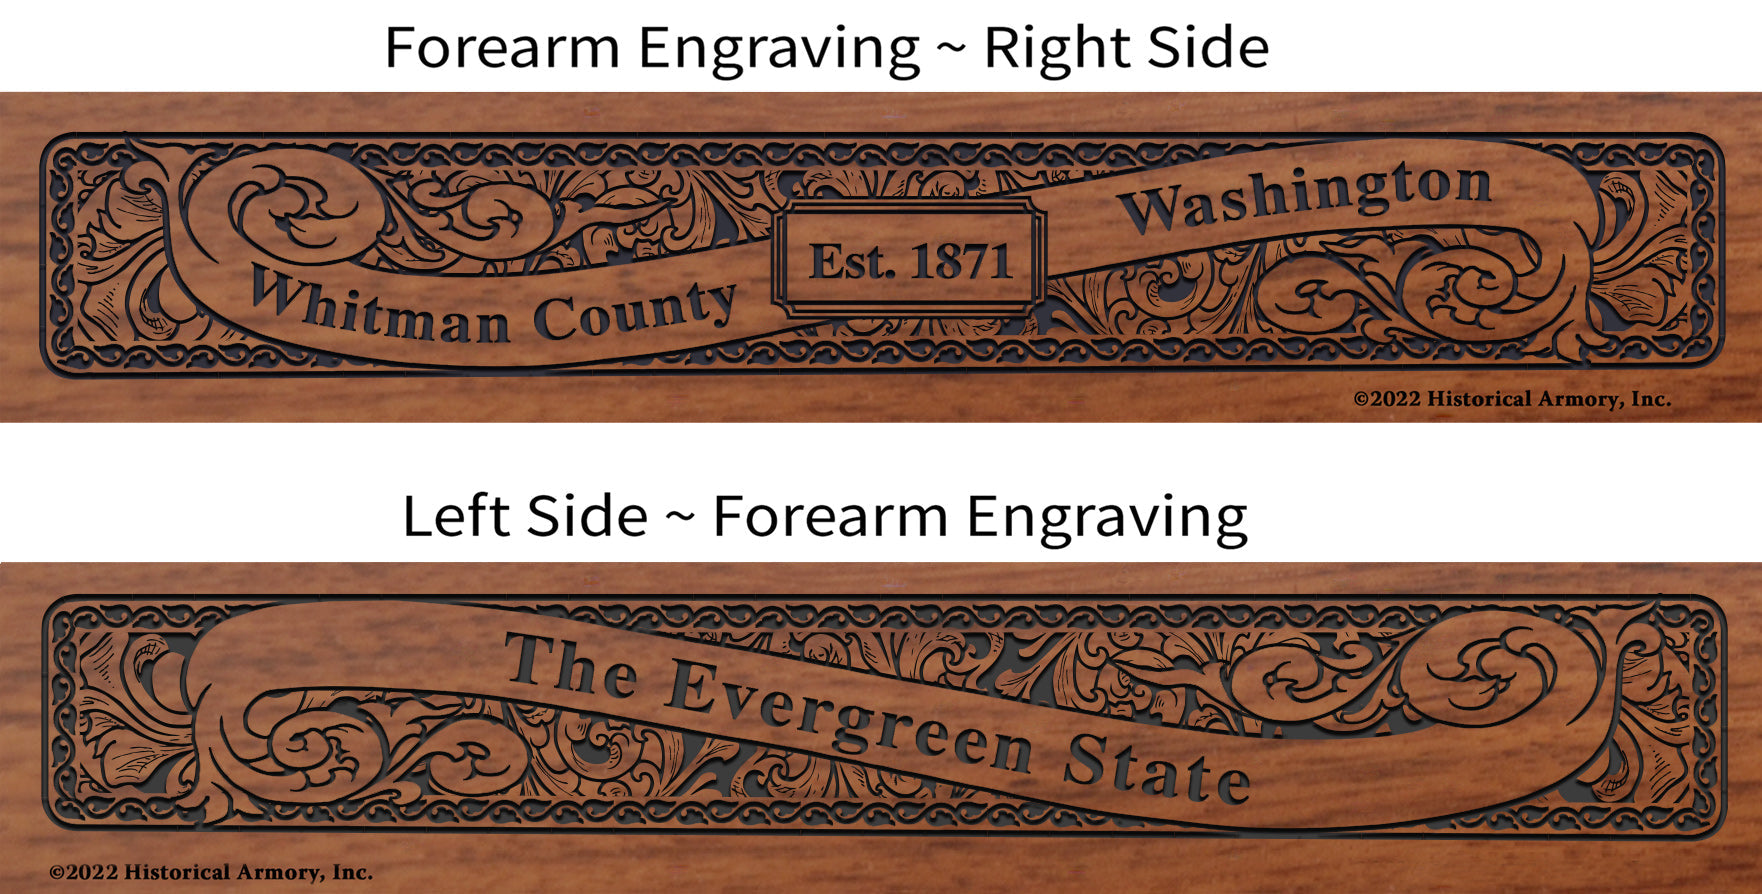 Whitman County Washington Engraved Rifle Forearm